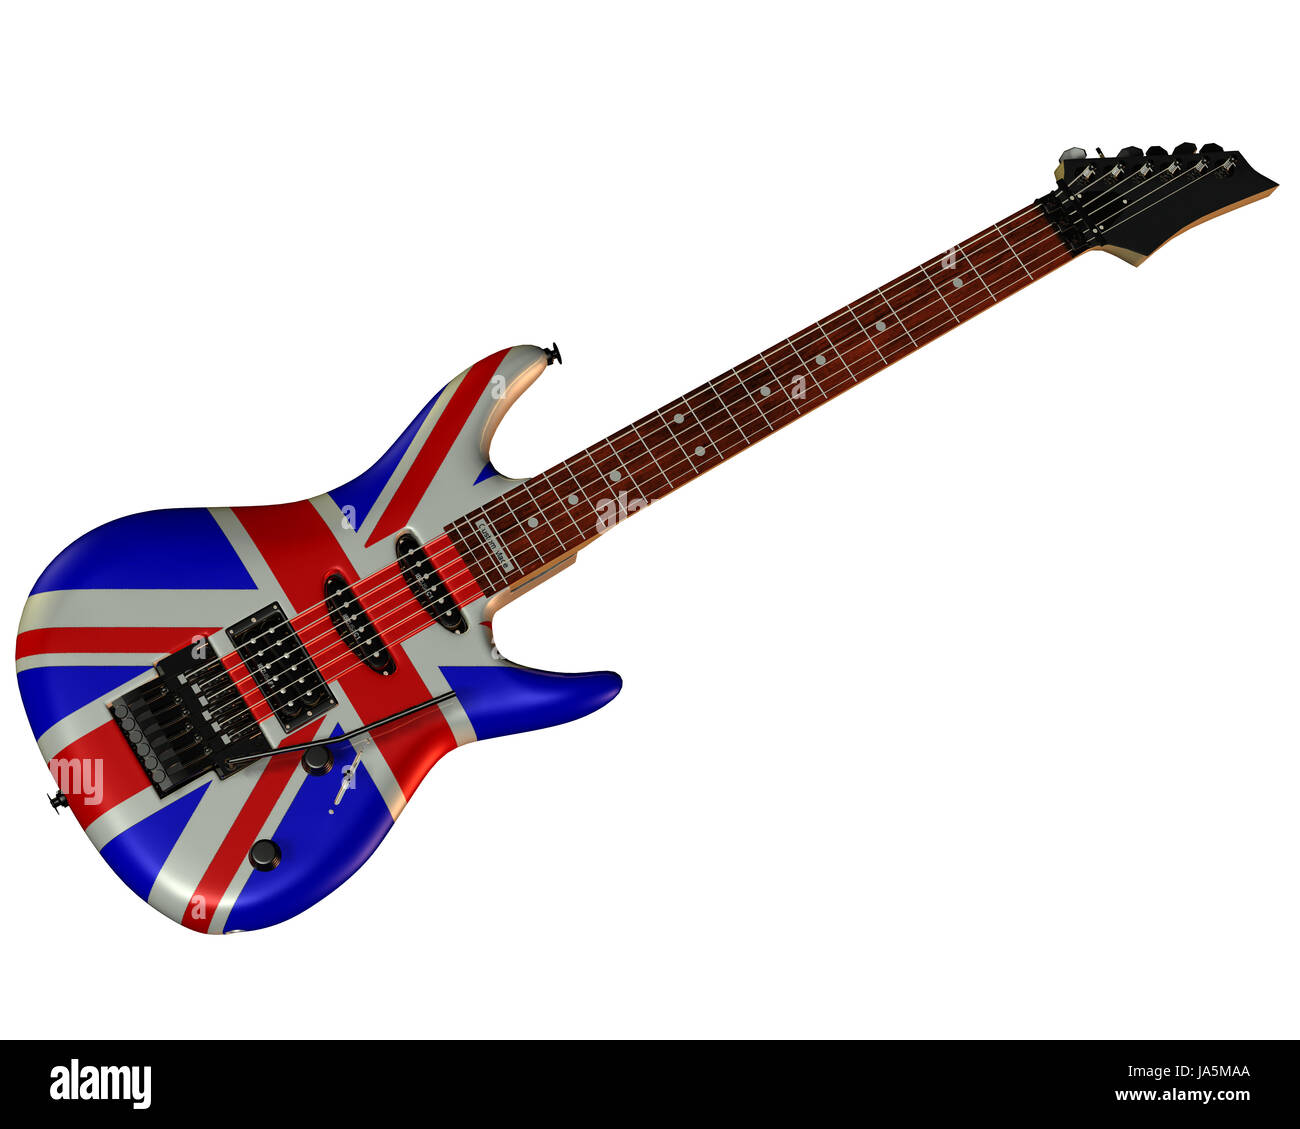 Electric guitar england flag Banque d'images détourées - Alamy